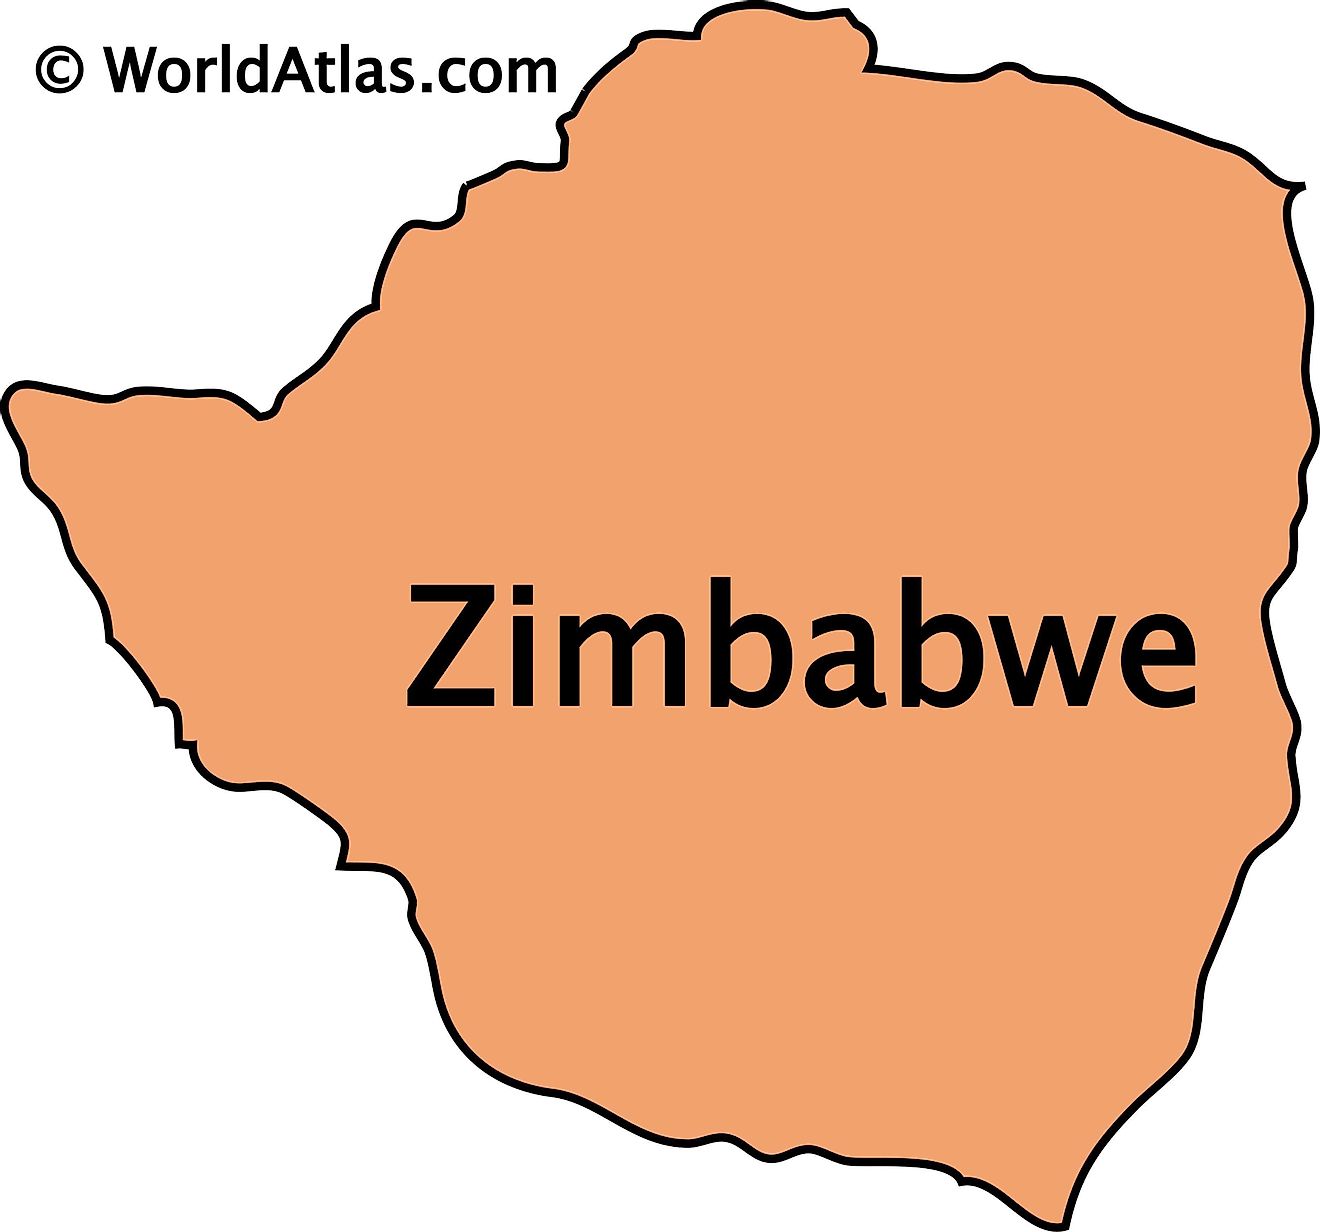 Outline map of Zimbabwe